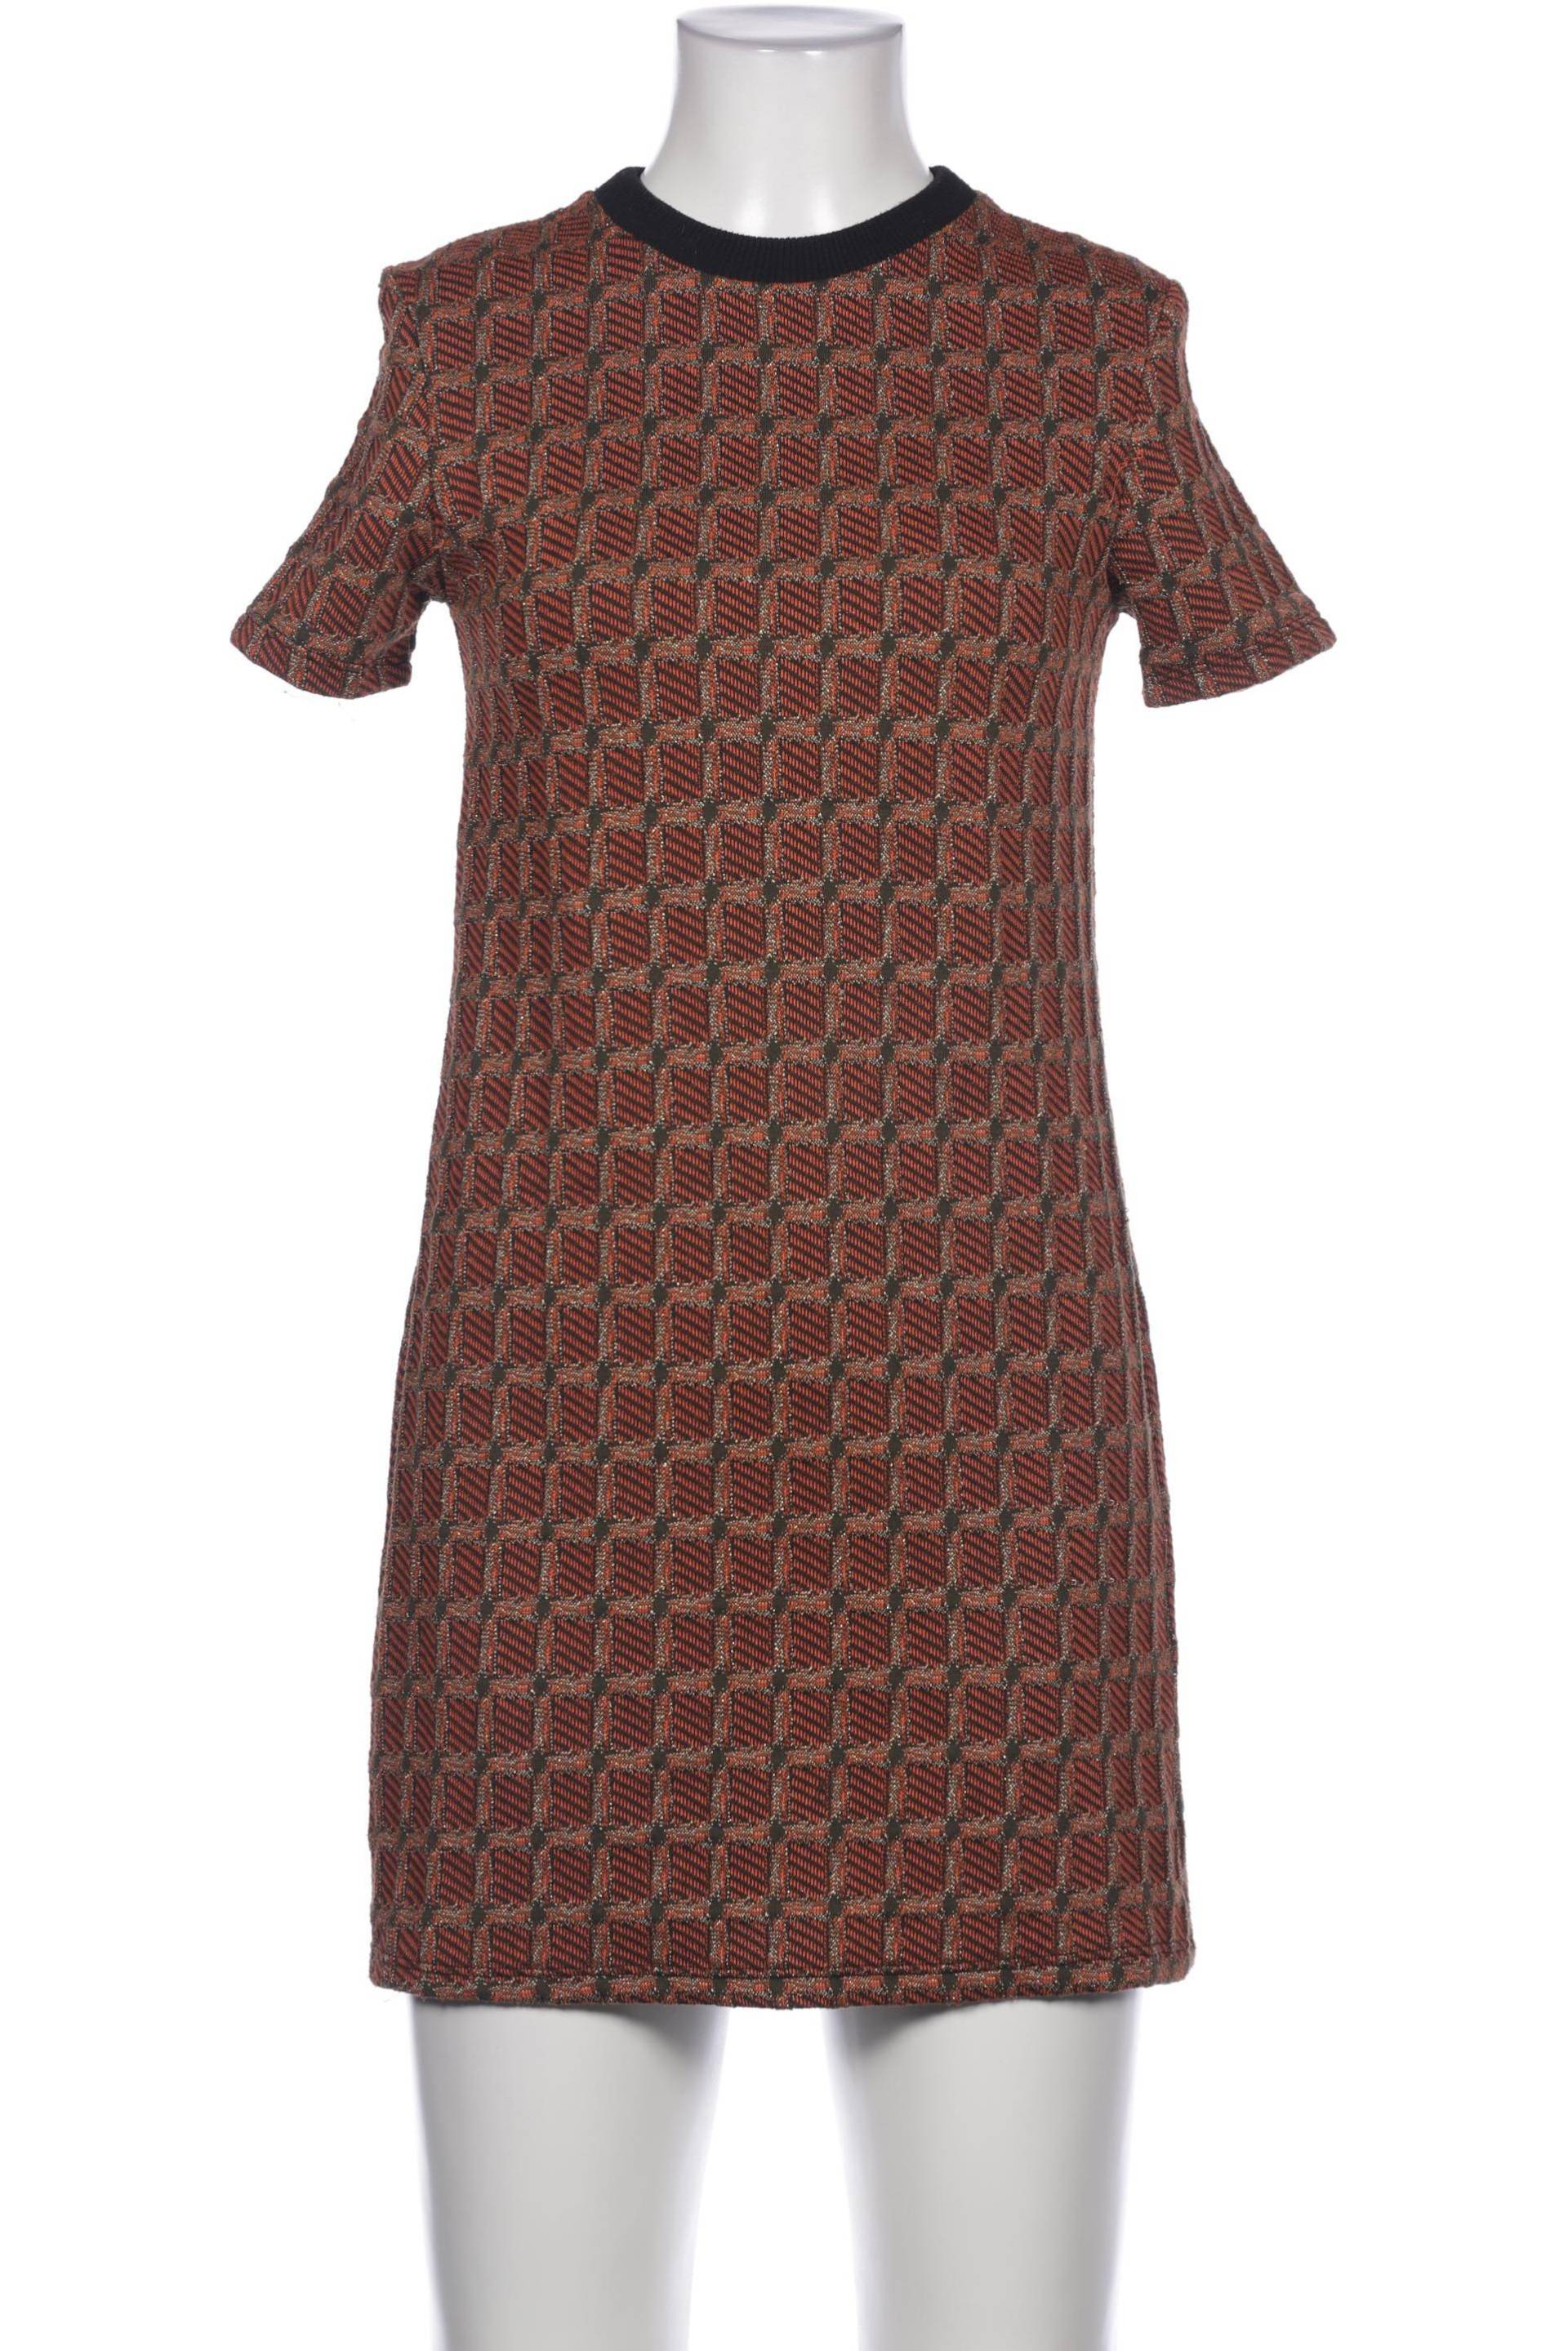 Zara Damen Kleid, braun, Gr. 36 von ZARA